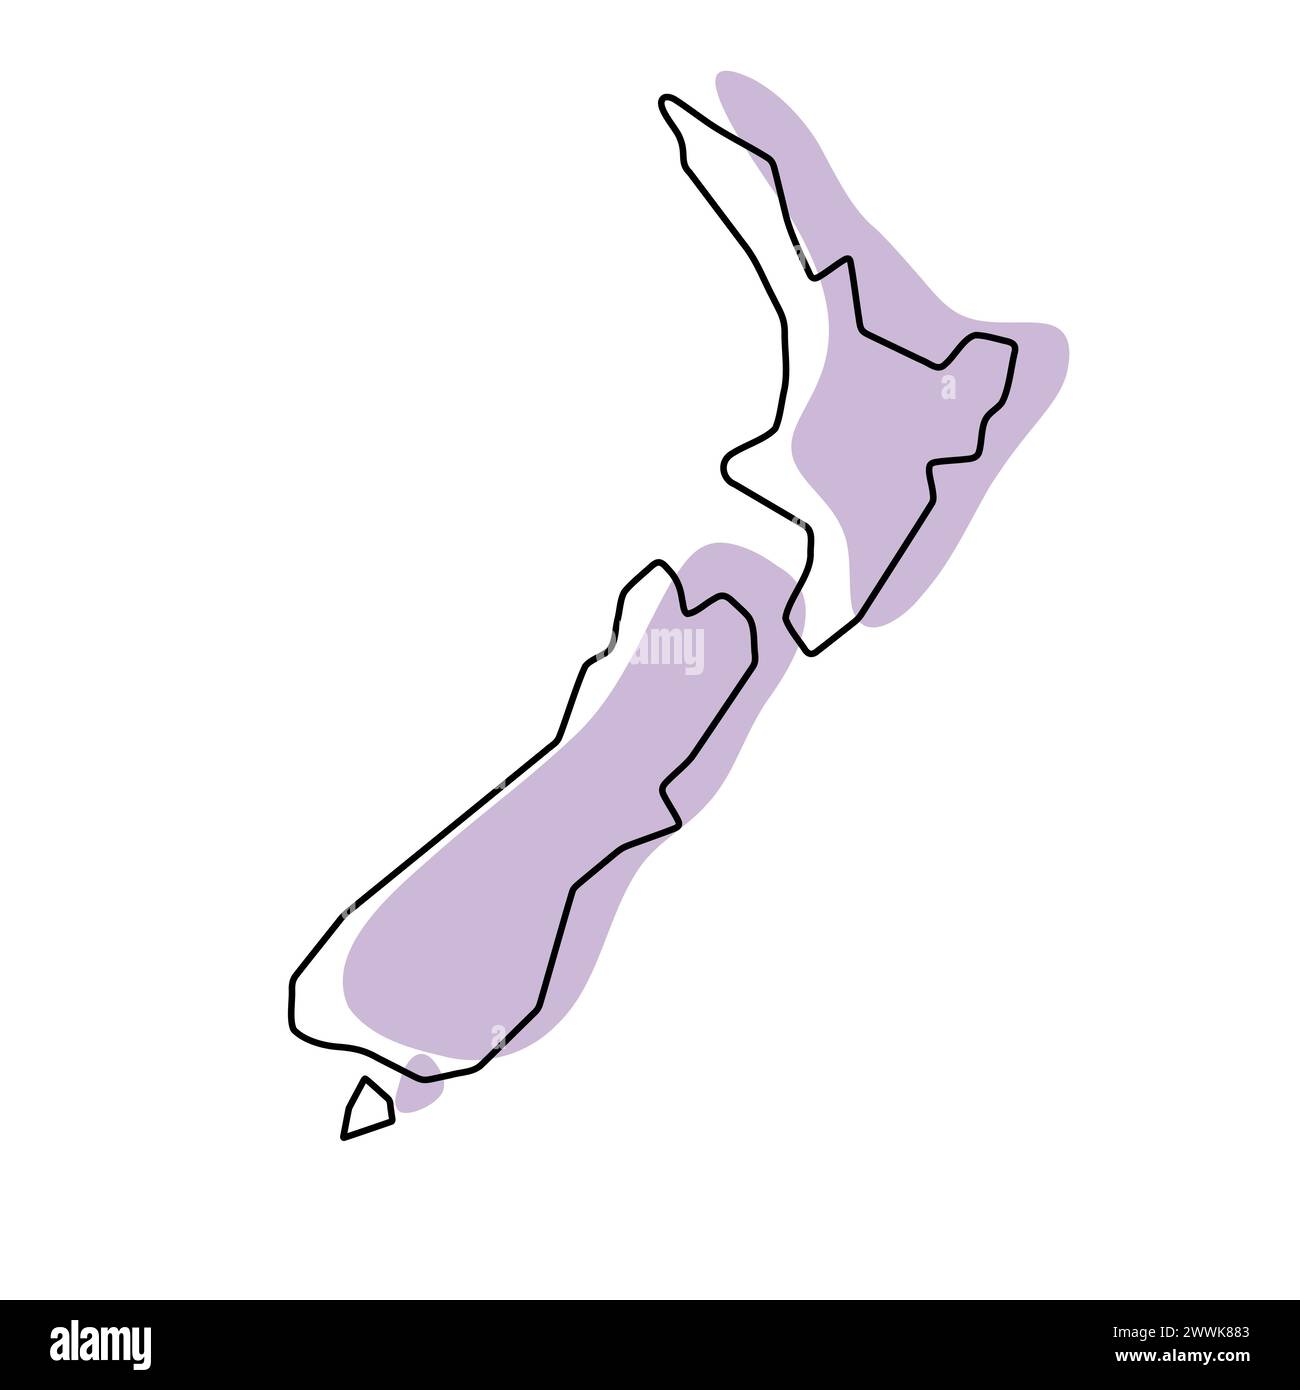 Vereinfachte Karte für das Land Neuseelands. Violette Silhouette mit dünner schwarzer glatter Kontur isoliert auf weißem Hintergrund. Einfaches Vektorsymbol Stock Vektor